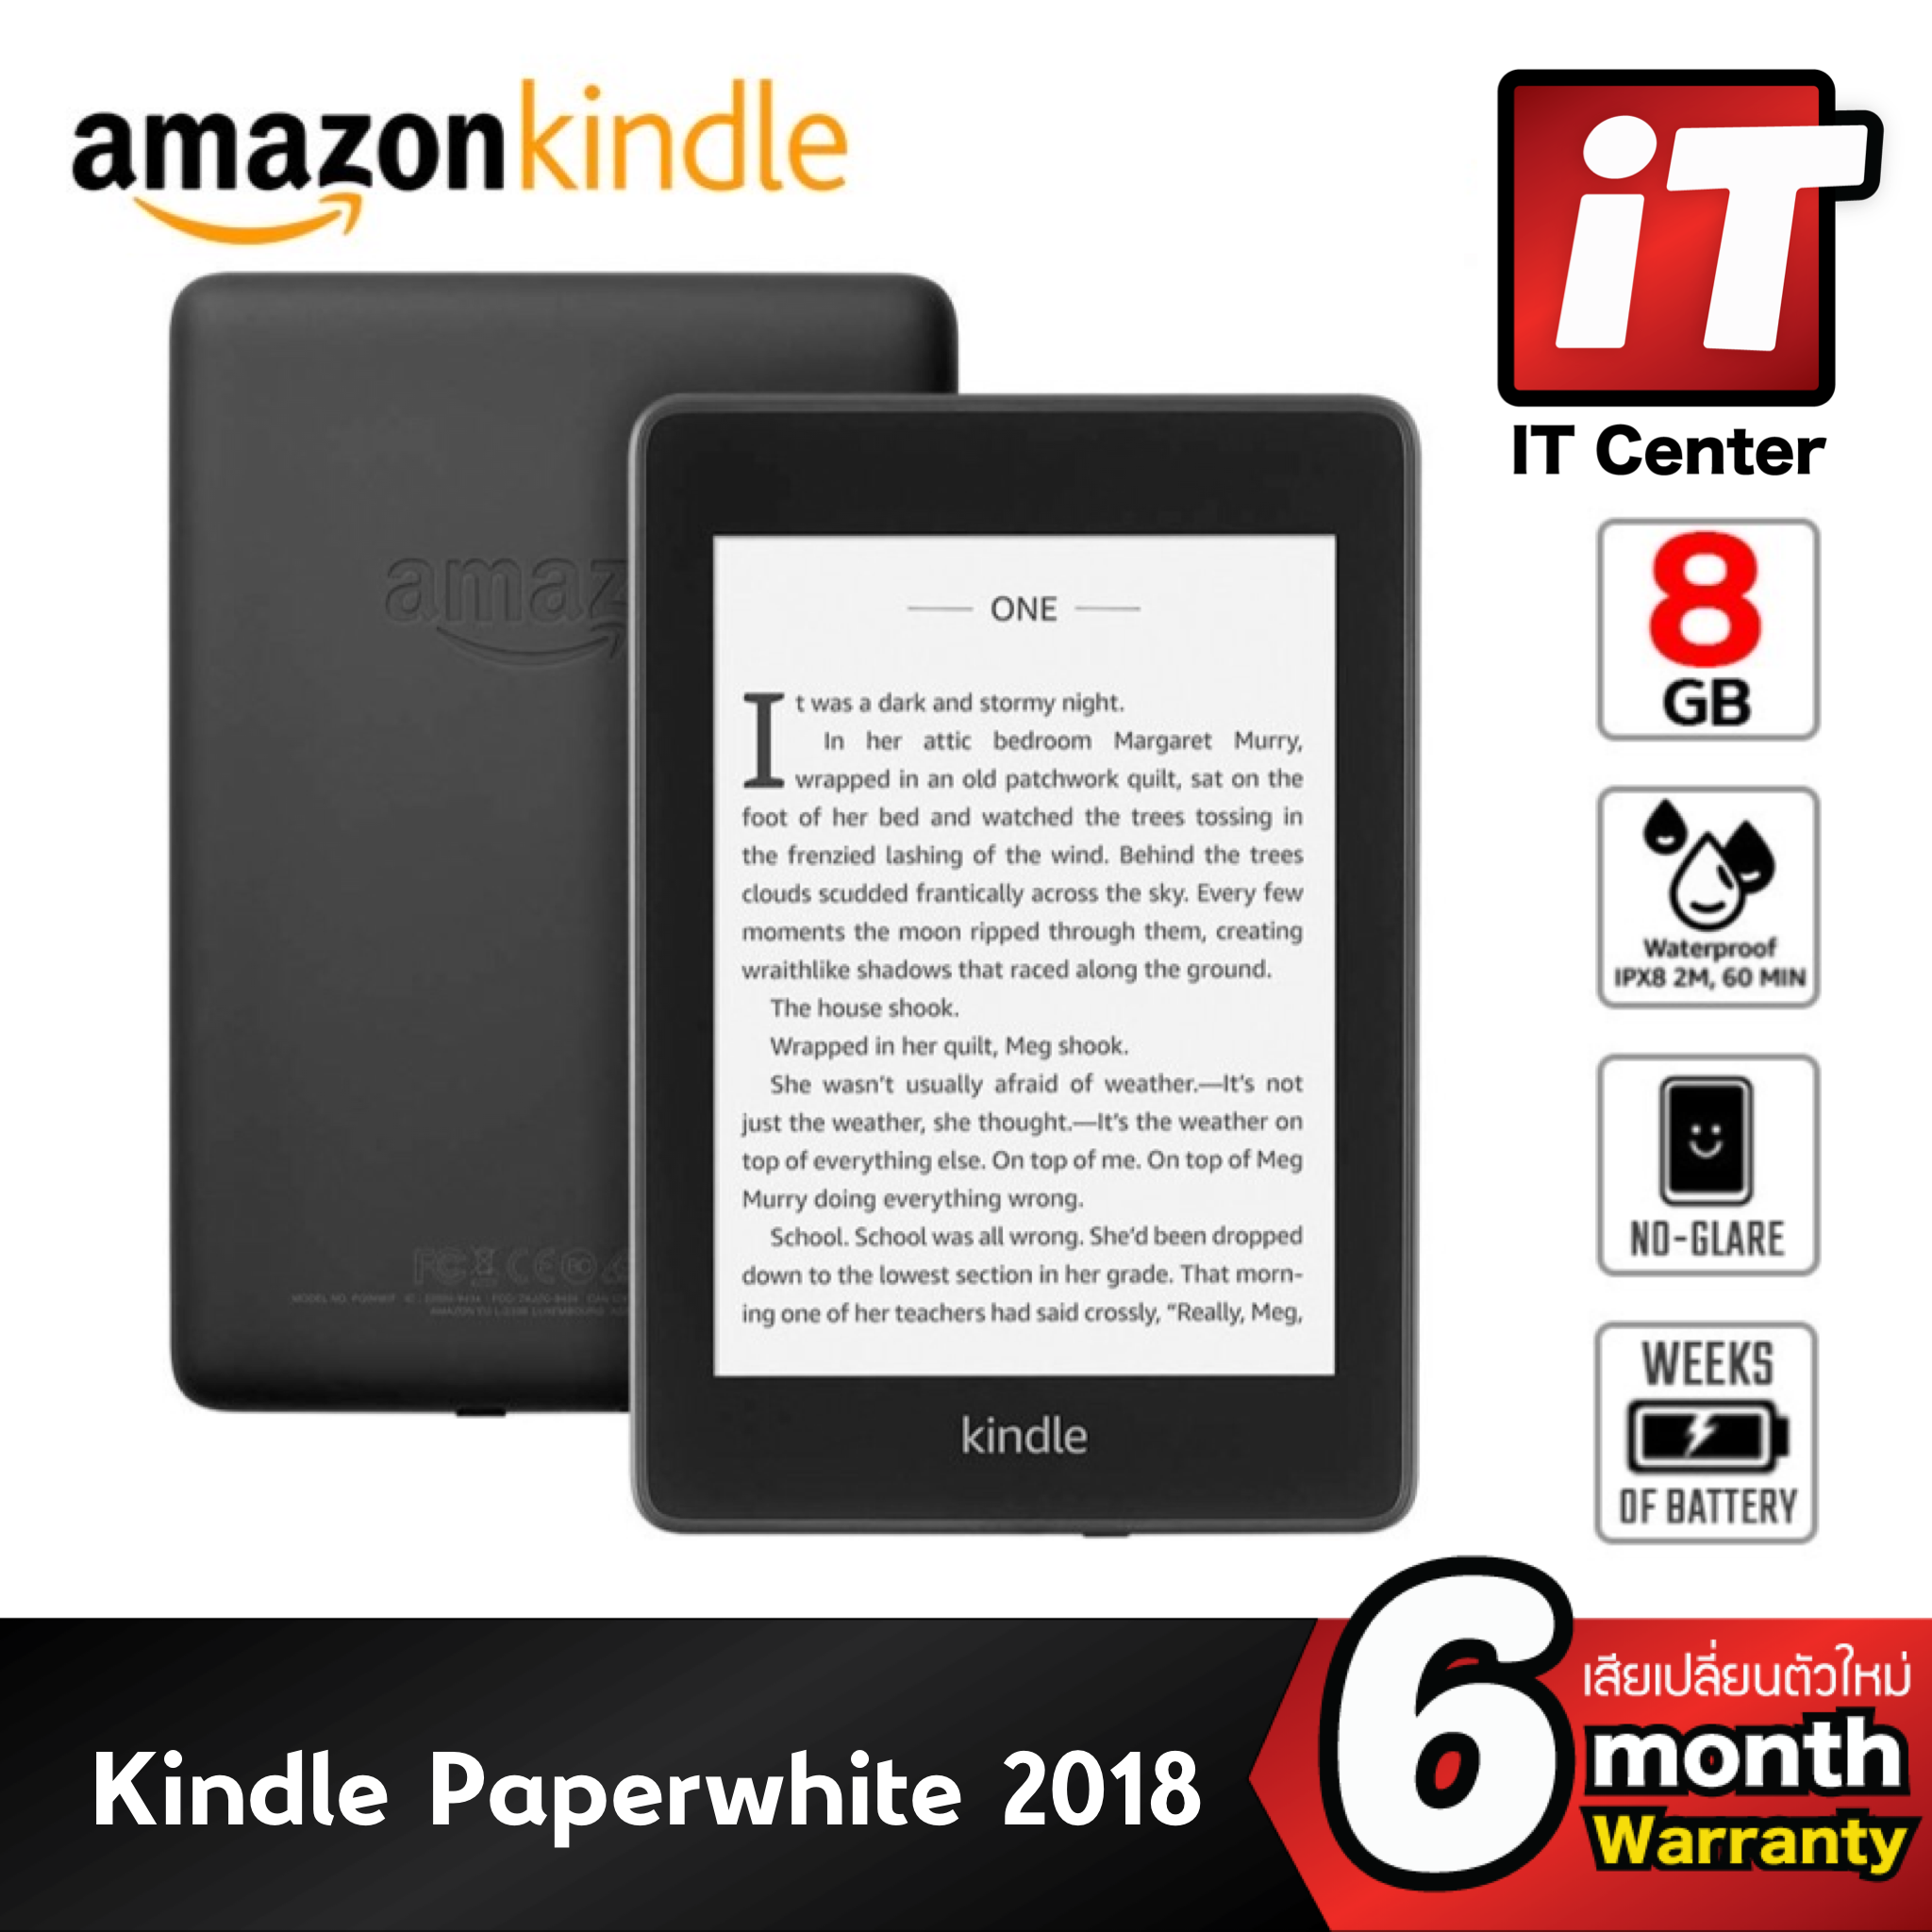 เครื่องอ่านหนังสือ Amazon Kindle Paperwhite 10th GEN(2018)กันน้ำได้มาตรฐานIPX8ความจุ8GBและ32GB